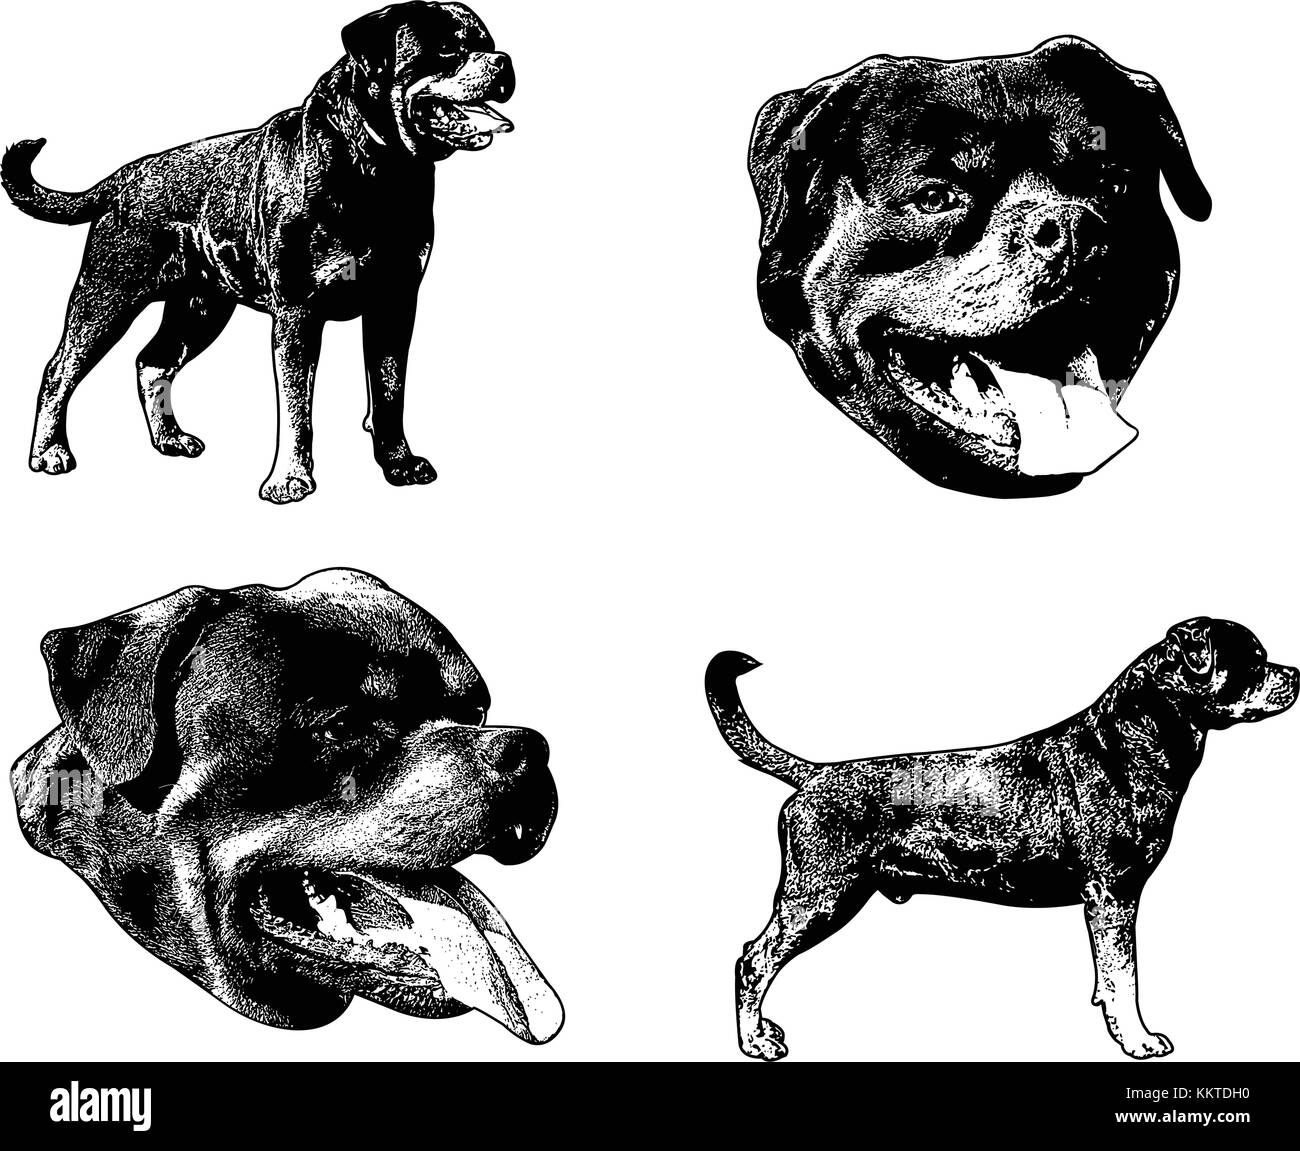 rottweiler dog sketch illustration - vector Stock Vector